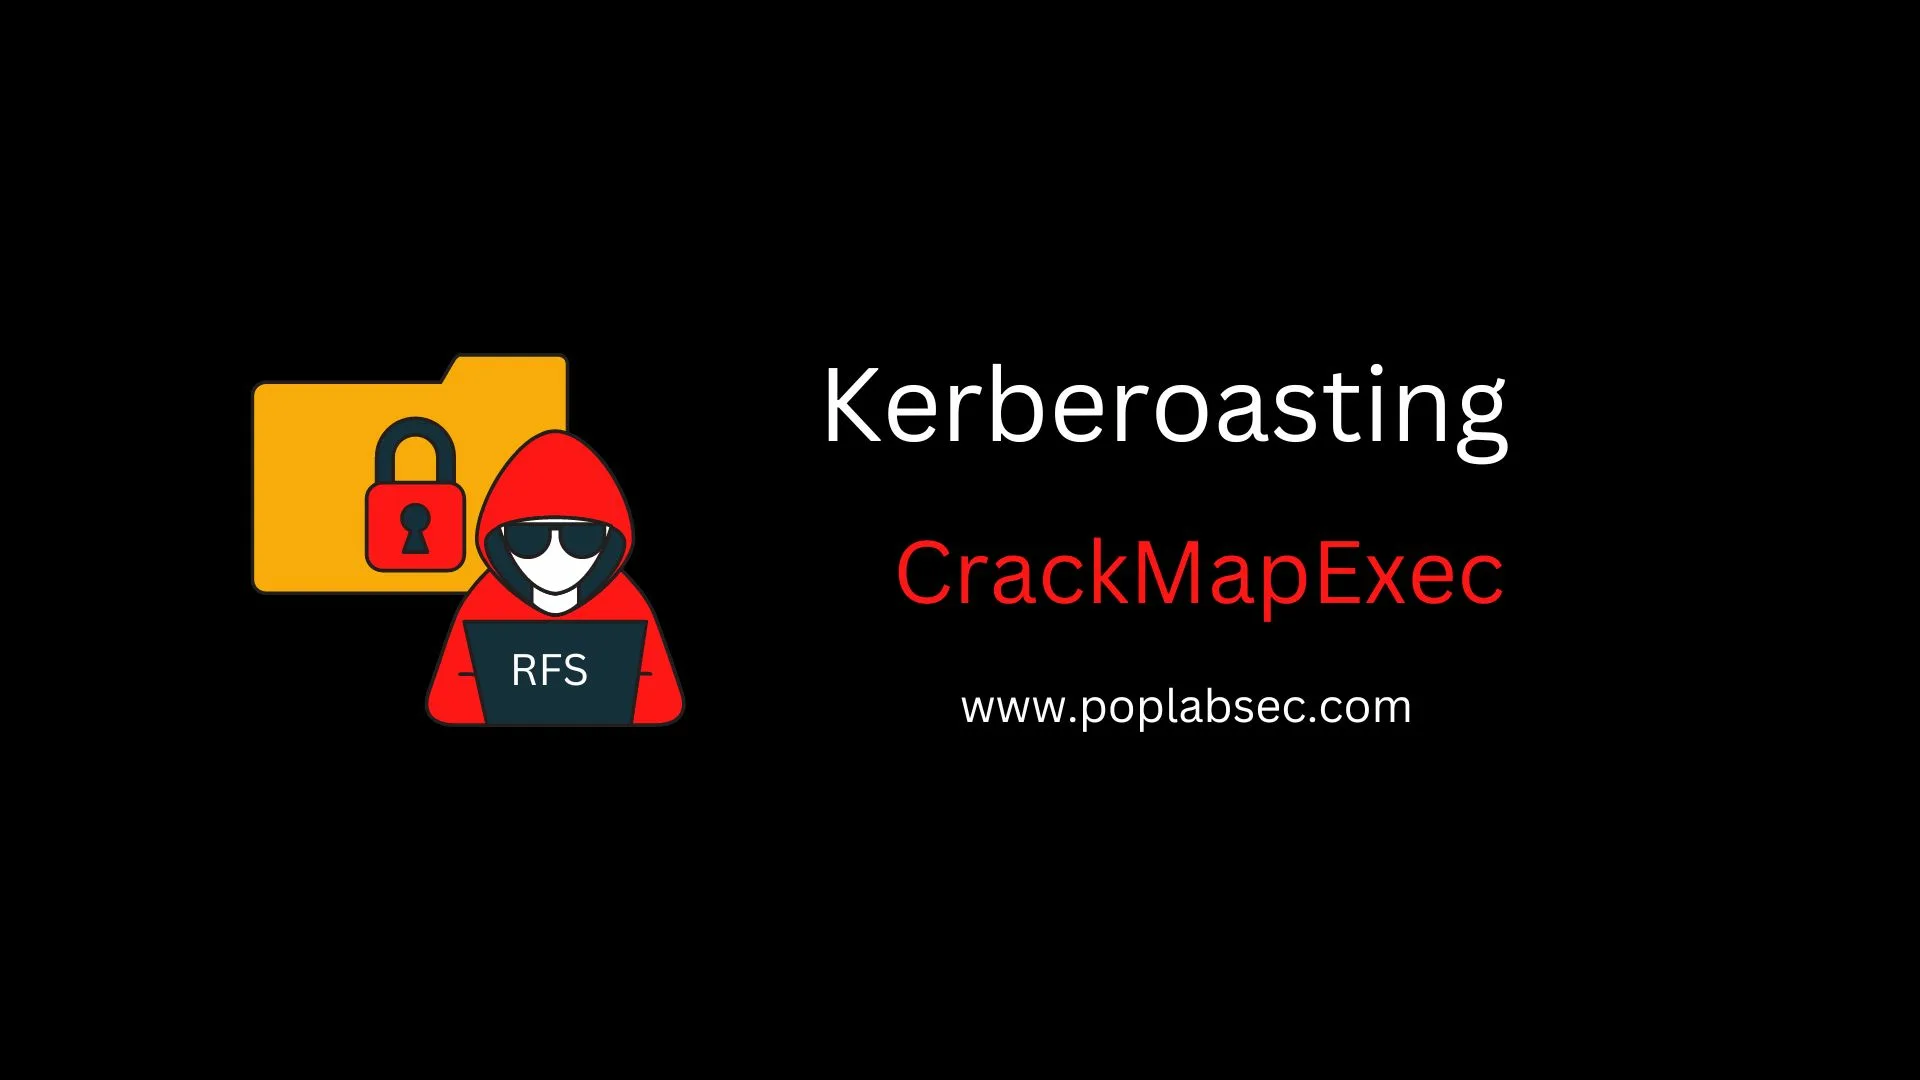 Kerberoasting with CrackMapExec